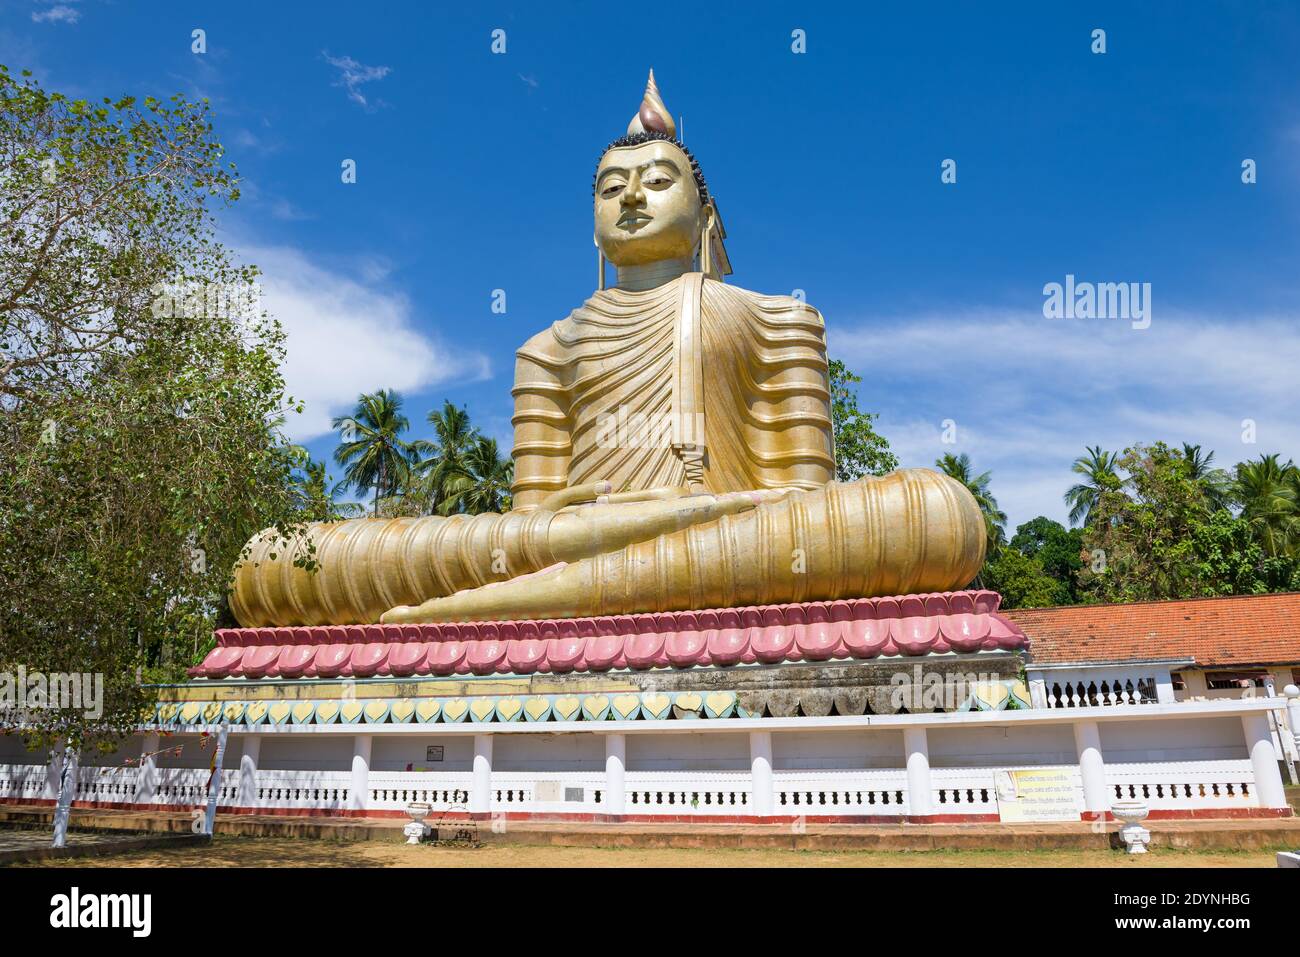 DIKWELLA, SRI LANKA - 17. FEBRUAR 2020: Riesige Skulptur eines sitzenden Buddha (Buddha mit einem Haus auf dem Rücken) an einem sonnigen Tag. Buddhistischer Tempel Wewrukan Stockfoto